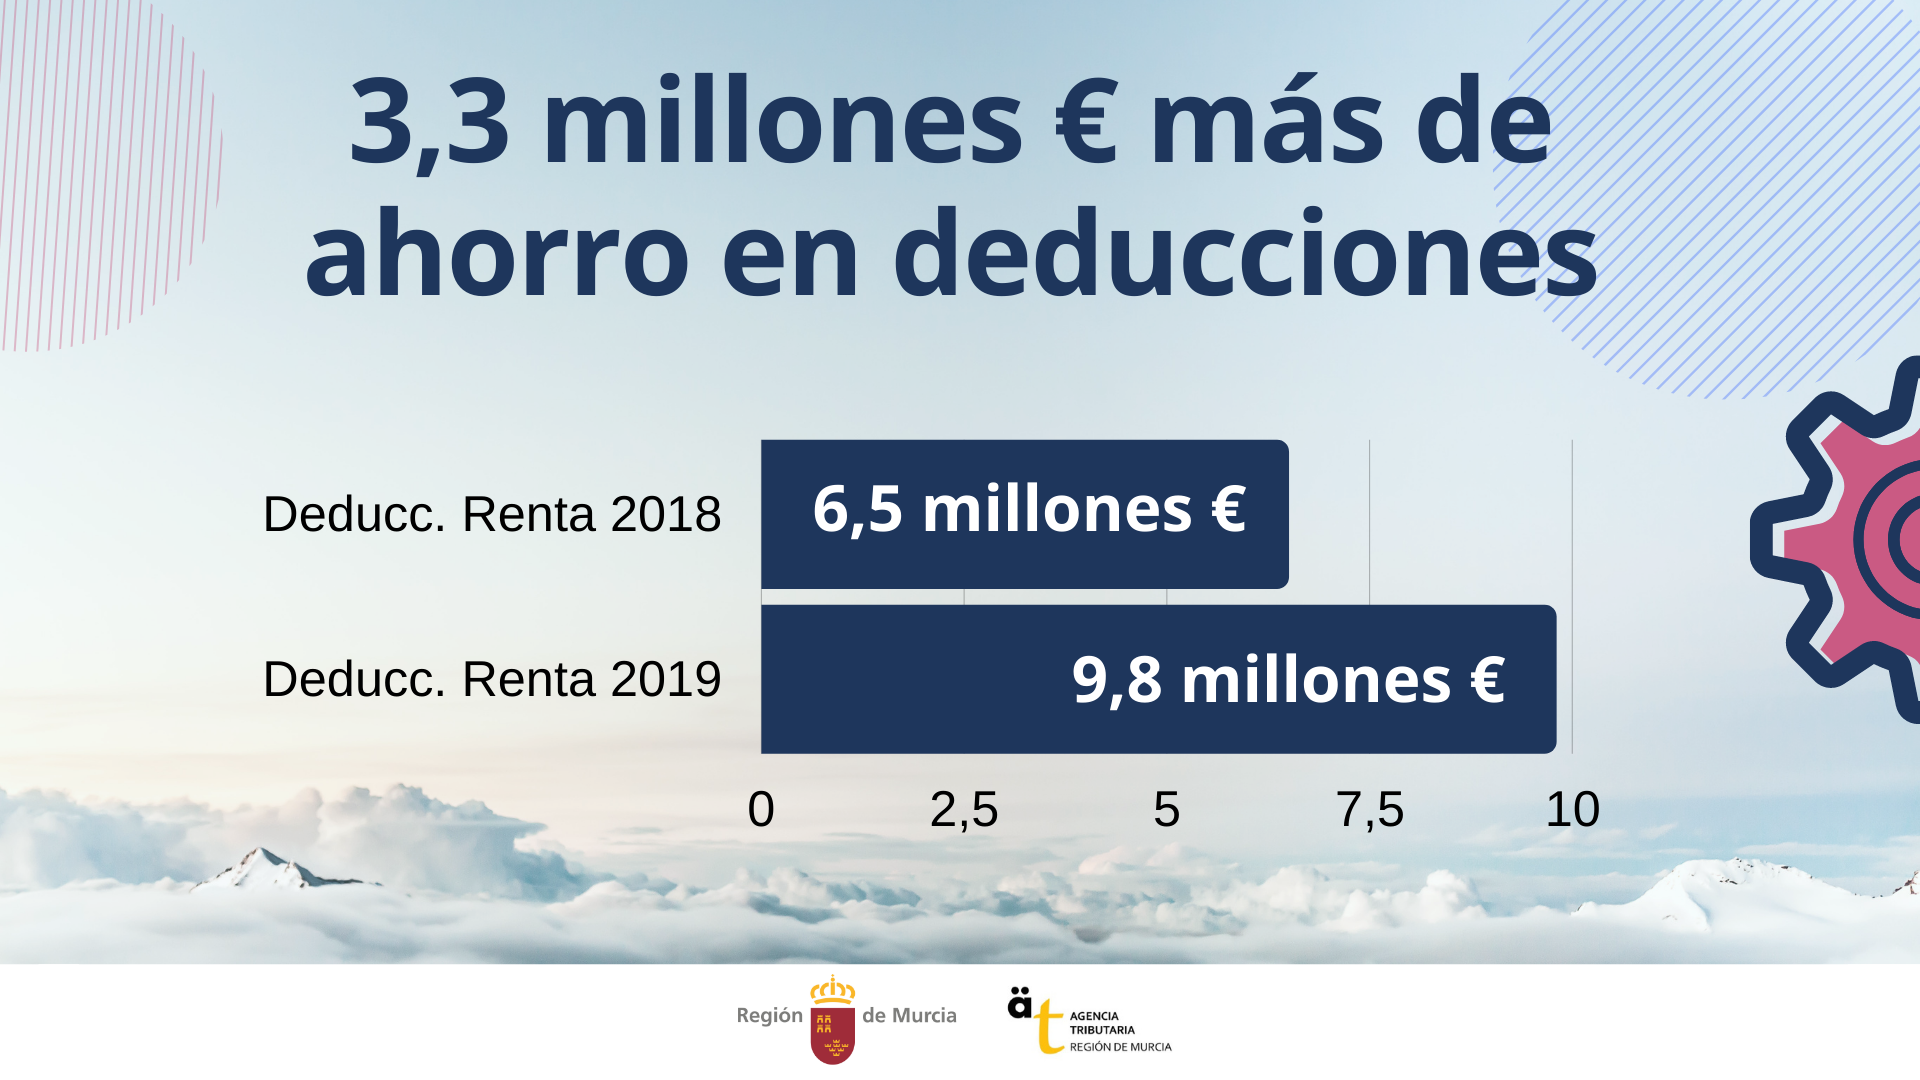 Gráfico sobre la subida del ahorro de los murcianos en deducciones autonómicas correspondientes a la campaña de la Renta 2019.